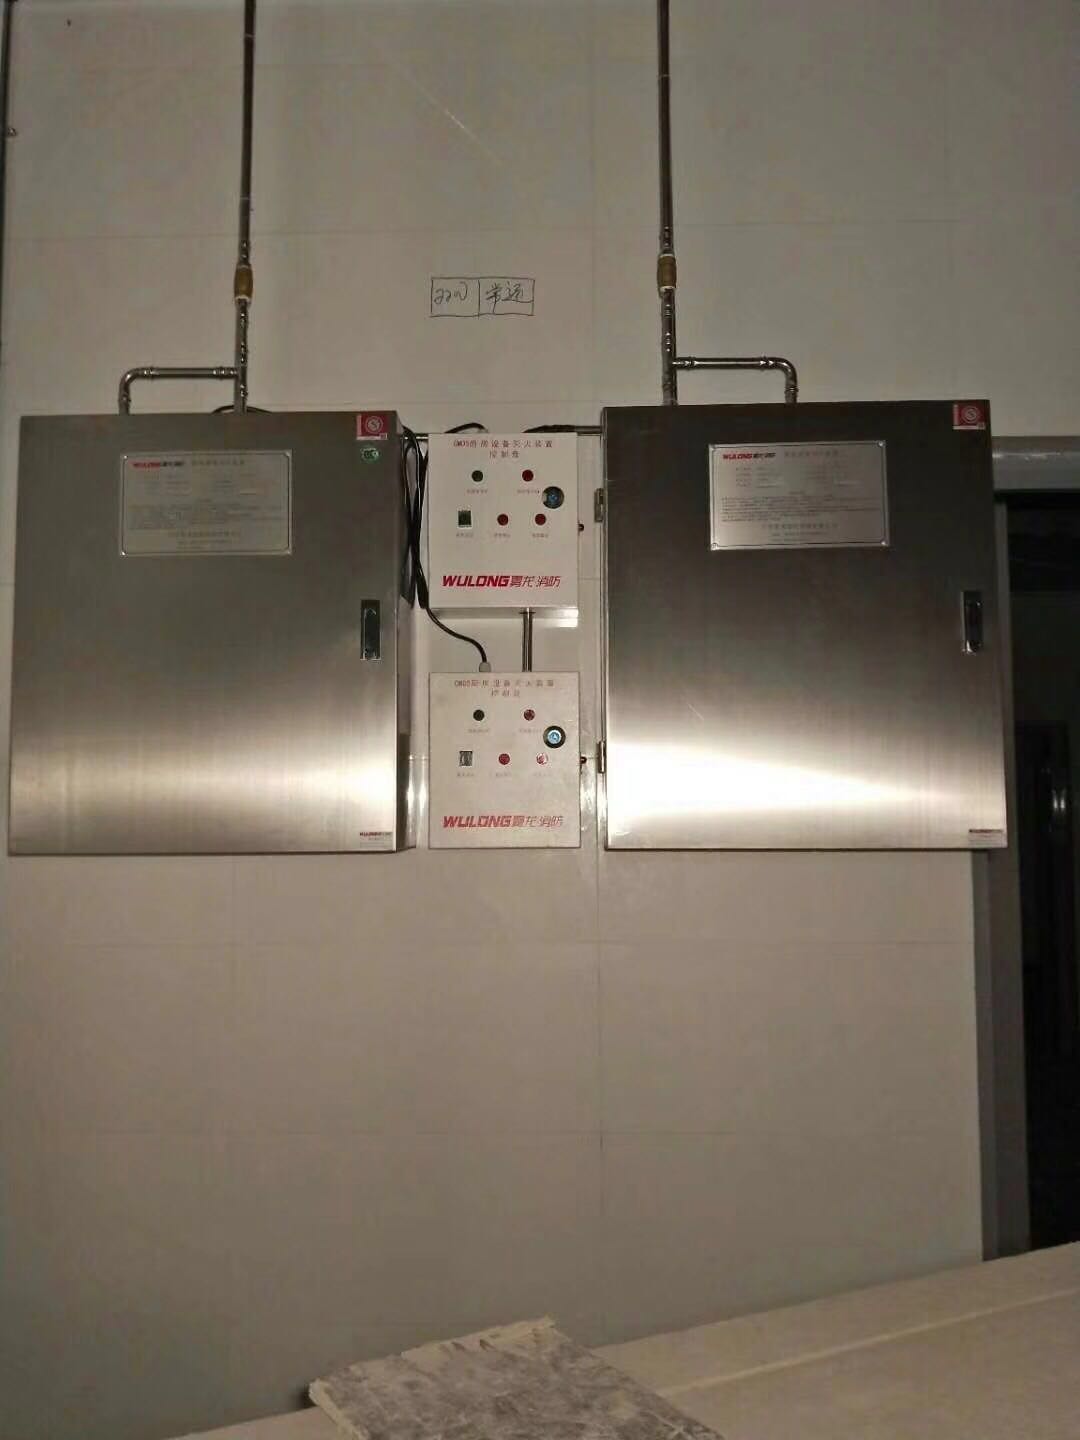 惠州壹家CMDS13厨房自动灭火设备装置包安装